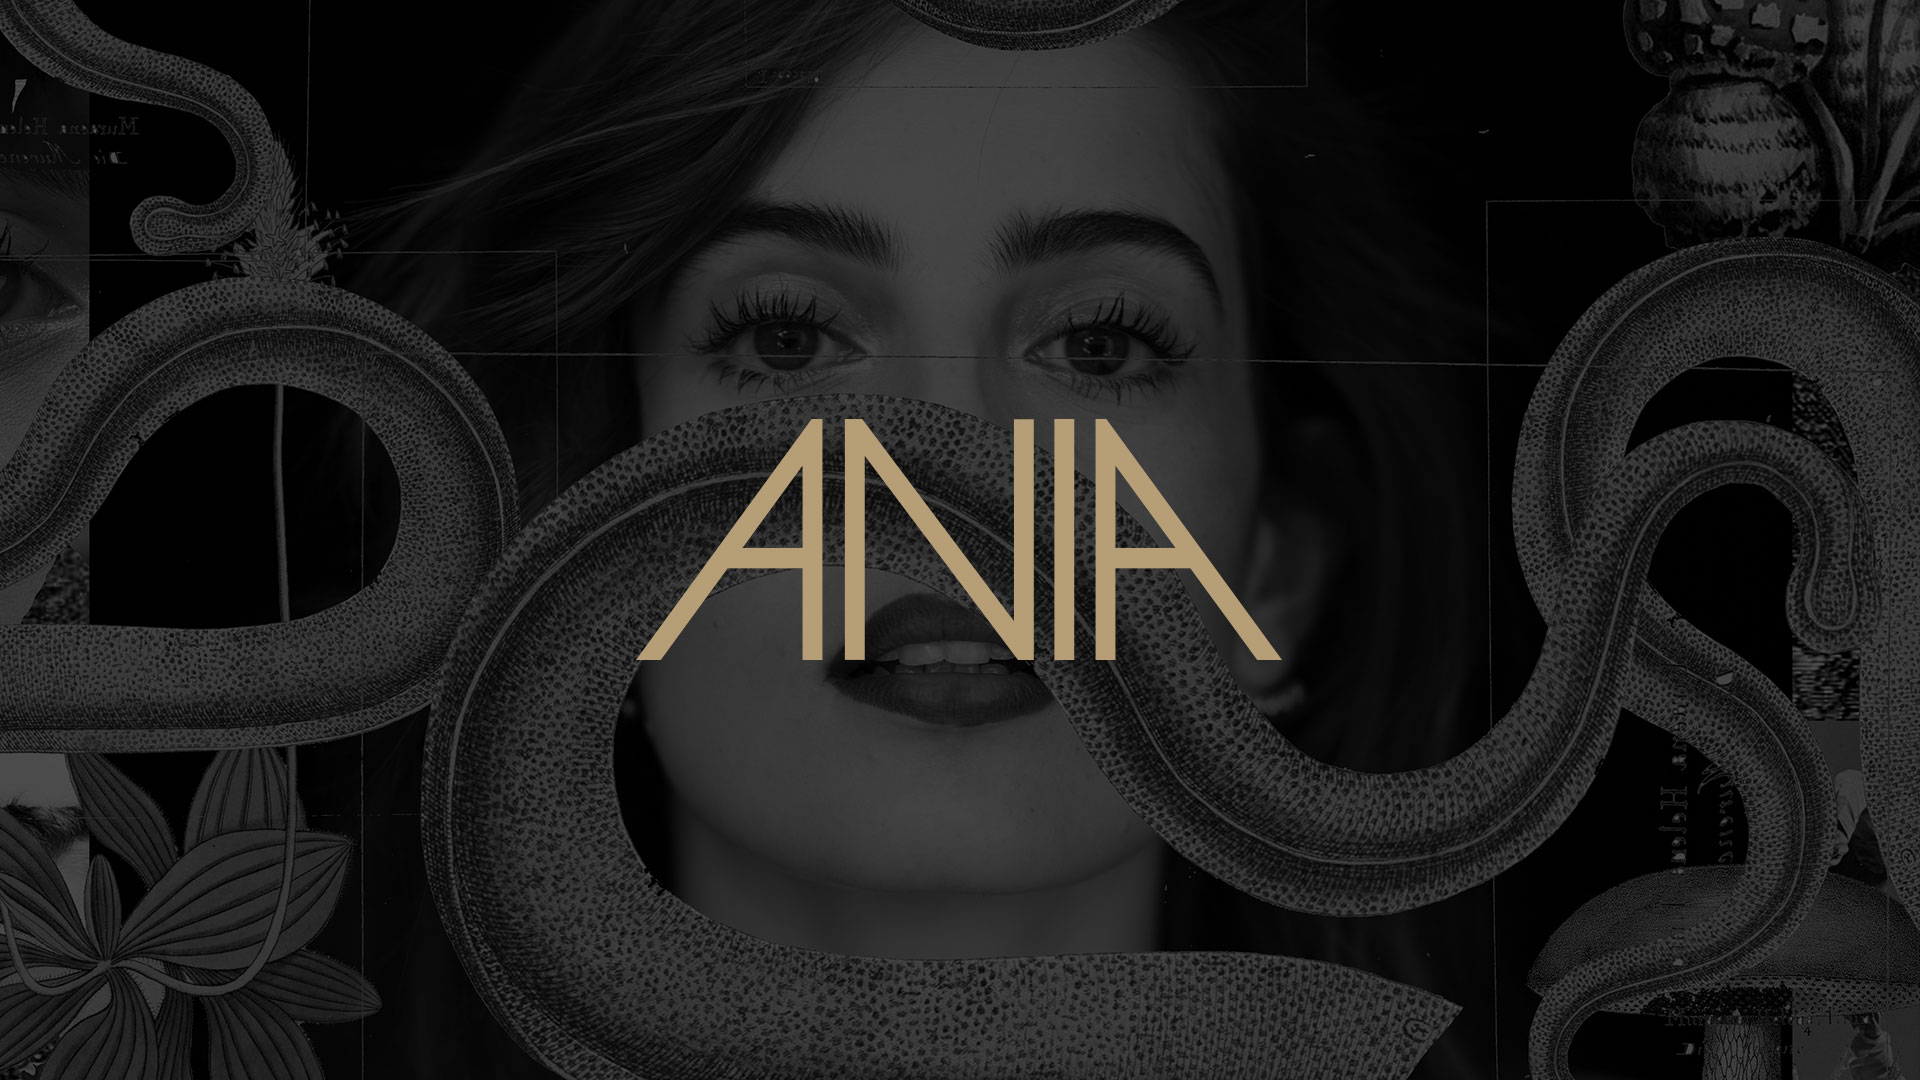 Ania album cover.